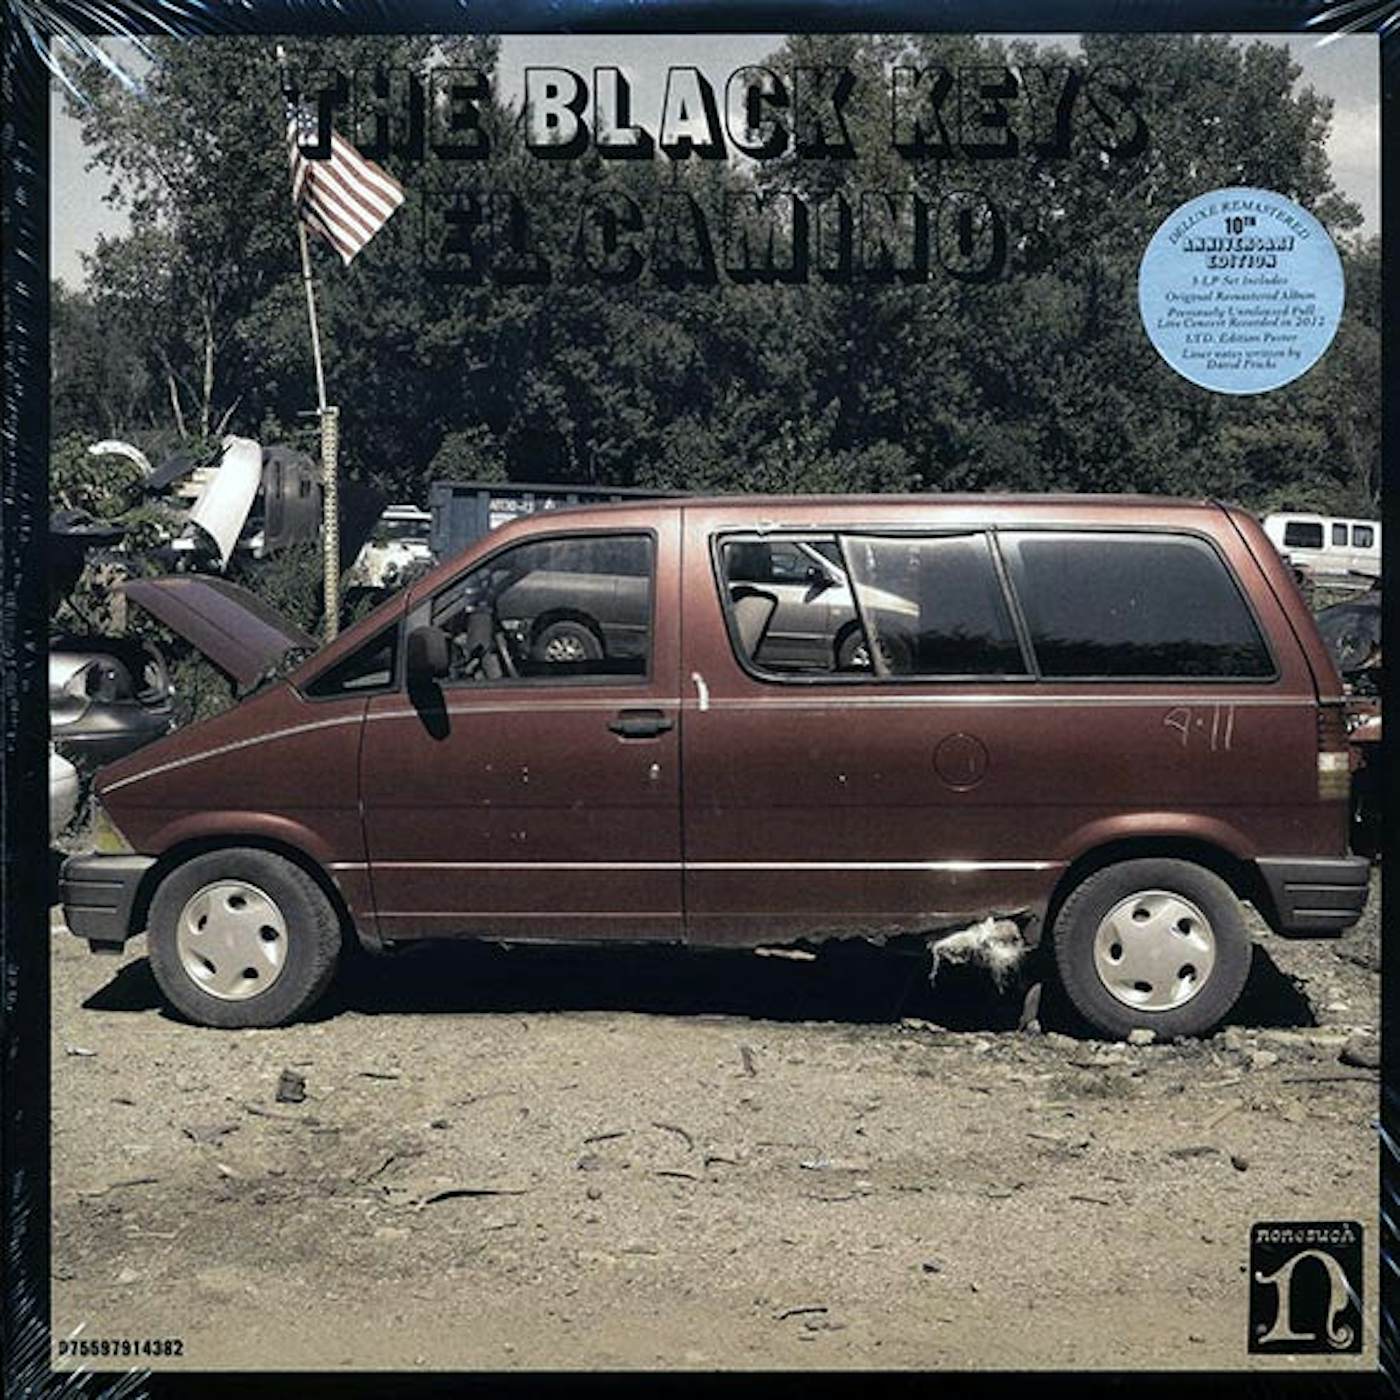 The Black Keys - El Camino (10th Anniversary Deluxe Edition